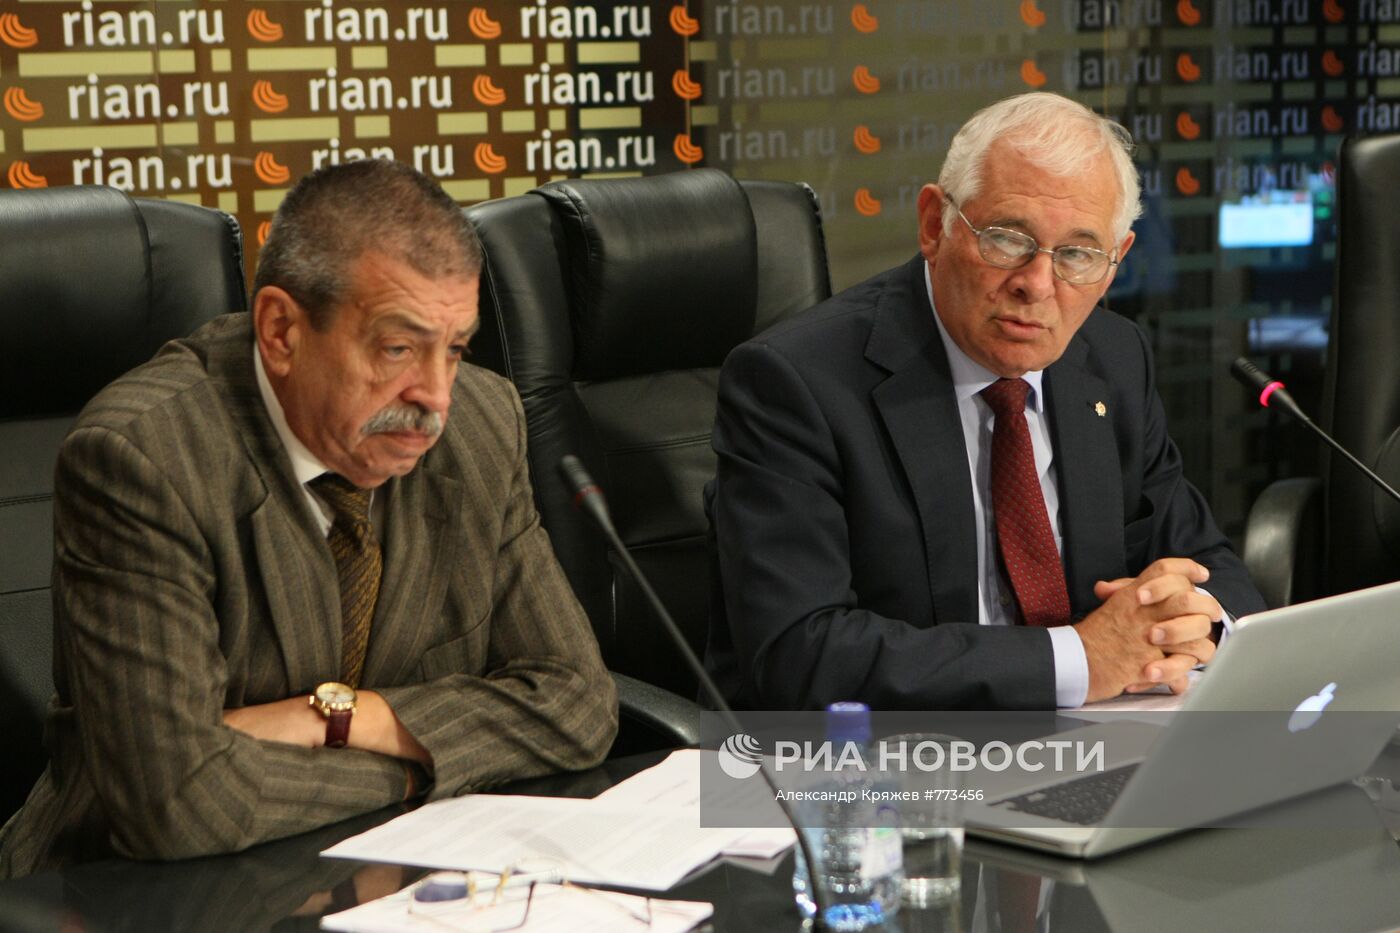 Пресс-конференция Леонида Рошаля и Михаила Кузьменко